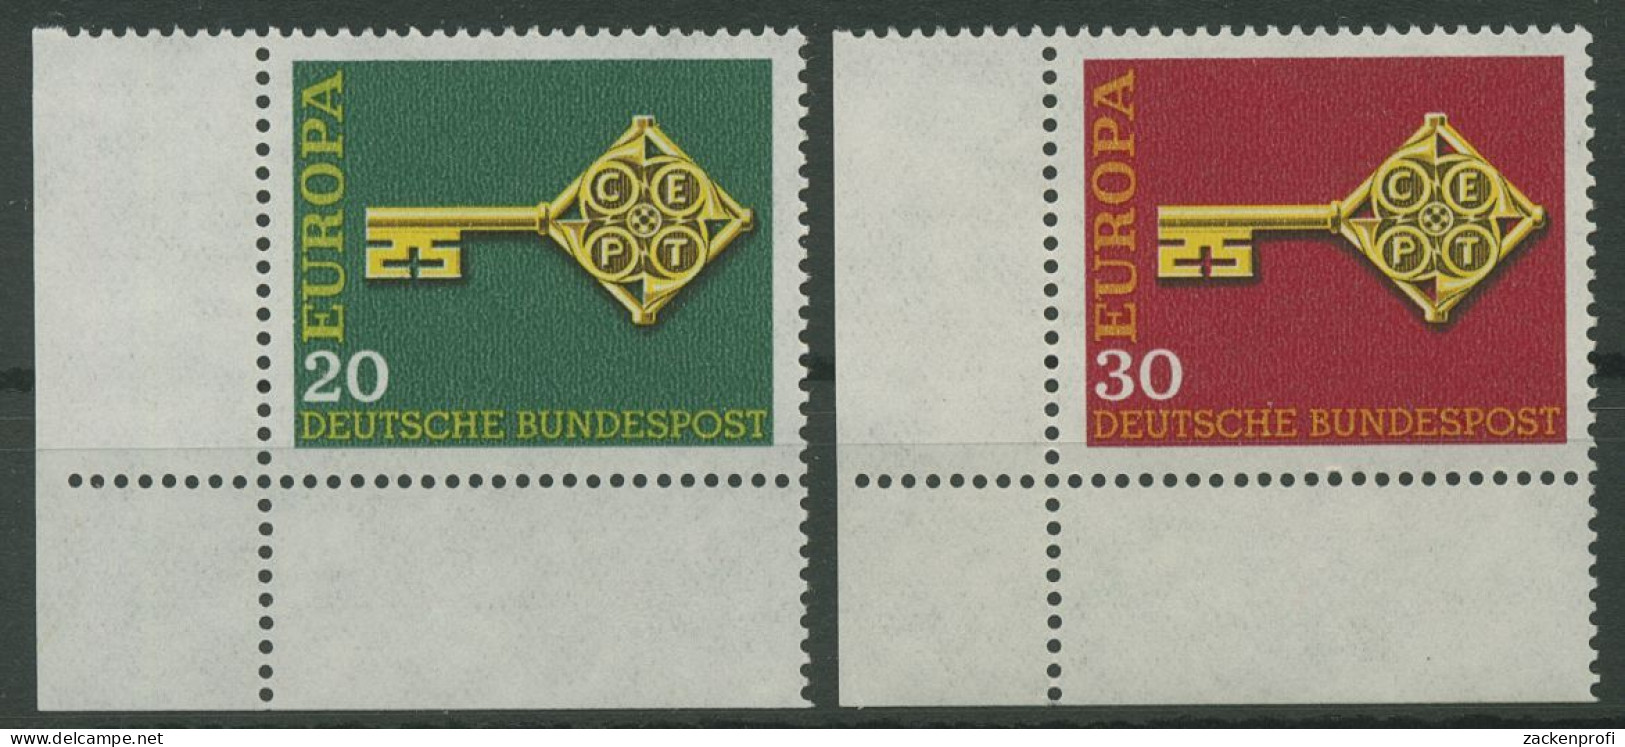 Bund 1968 Europa CEPT 559/60 Ecke 3 Unten Links Postfrisch (E842) - Ungebraucht